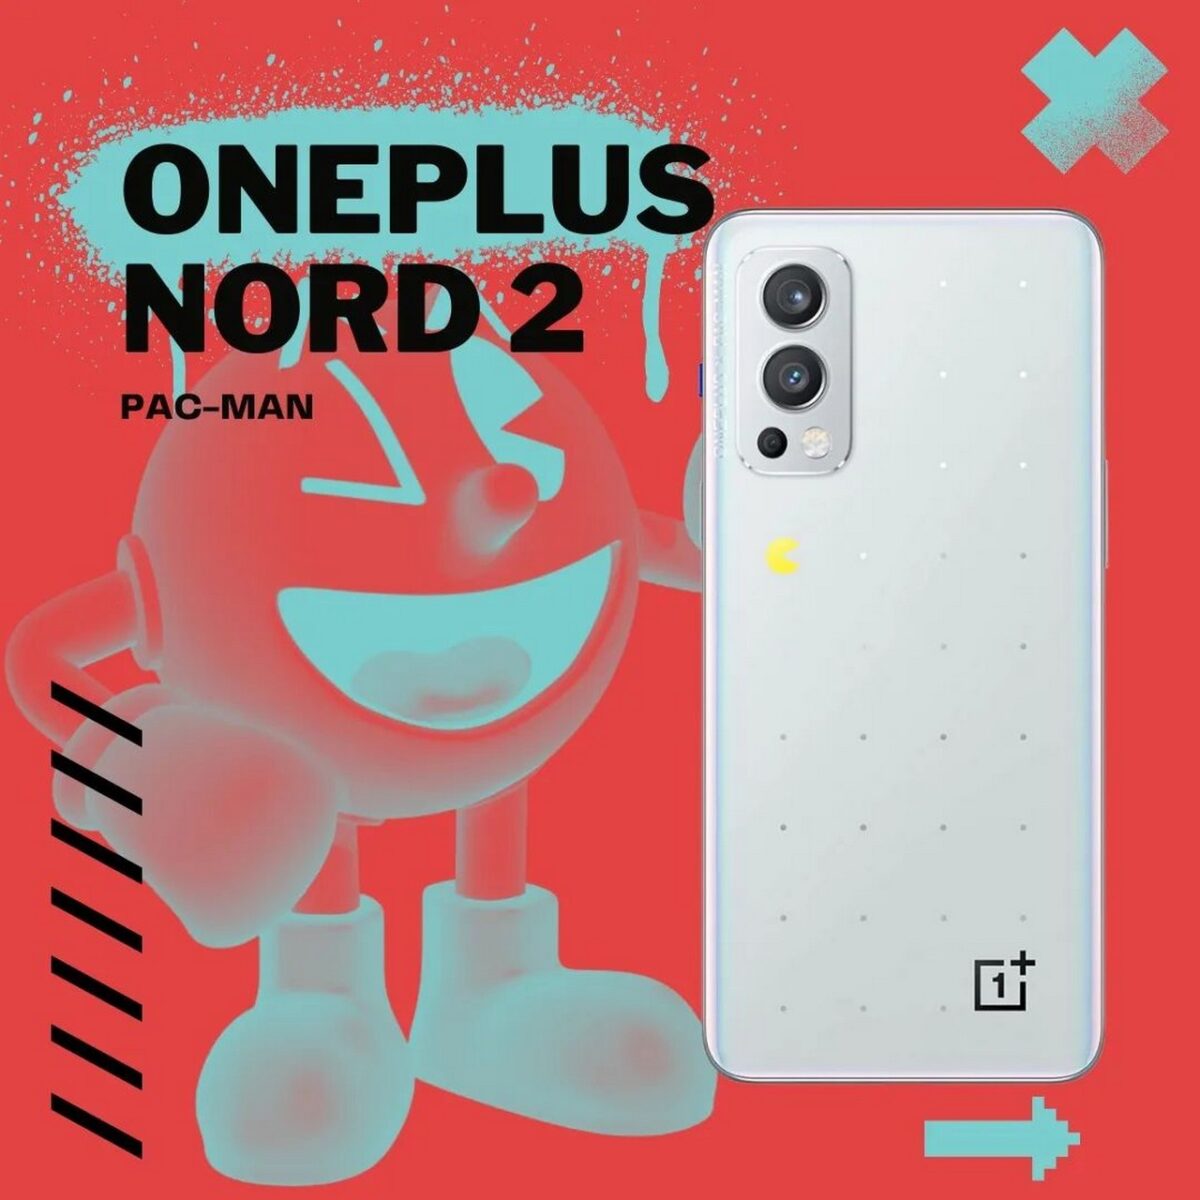 oneplus nord 2 pac-man